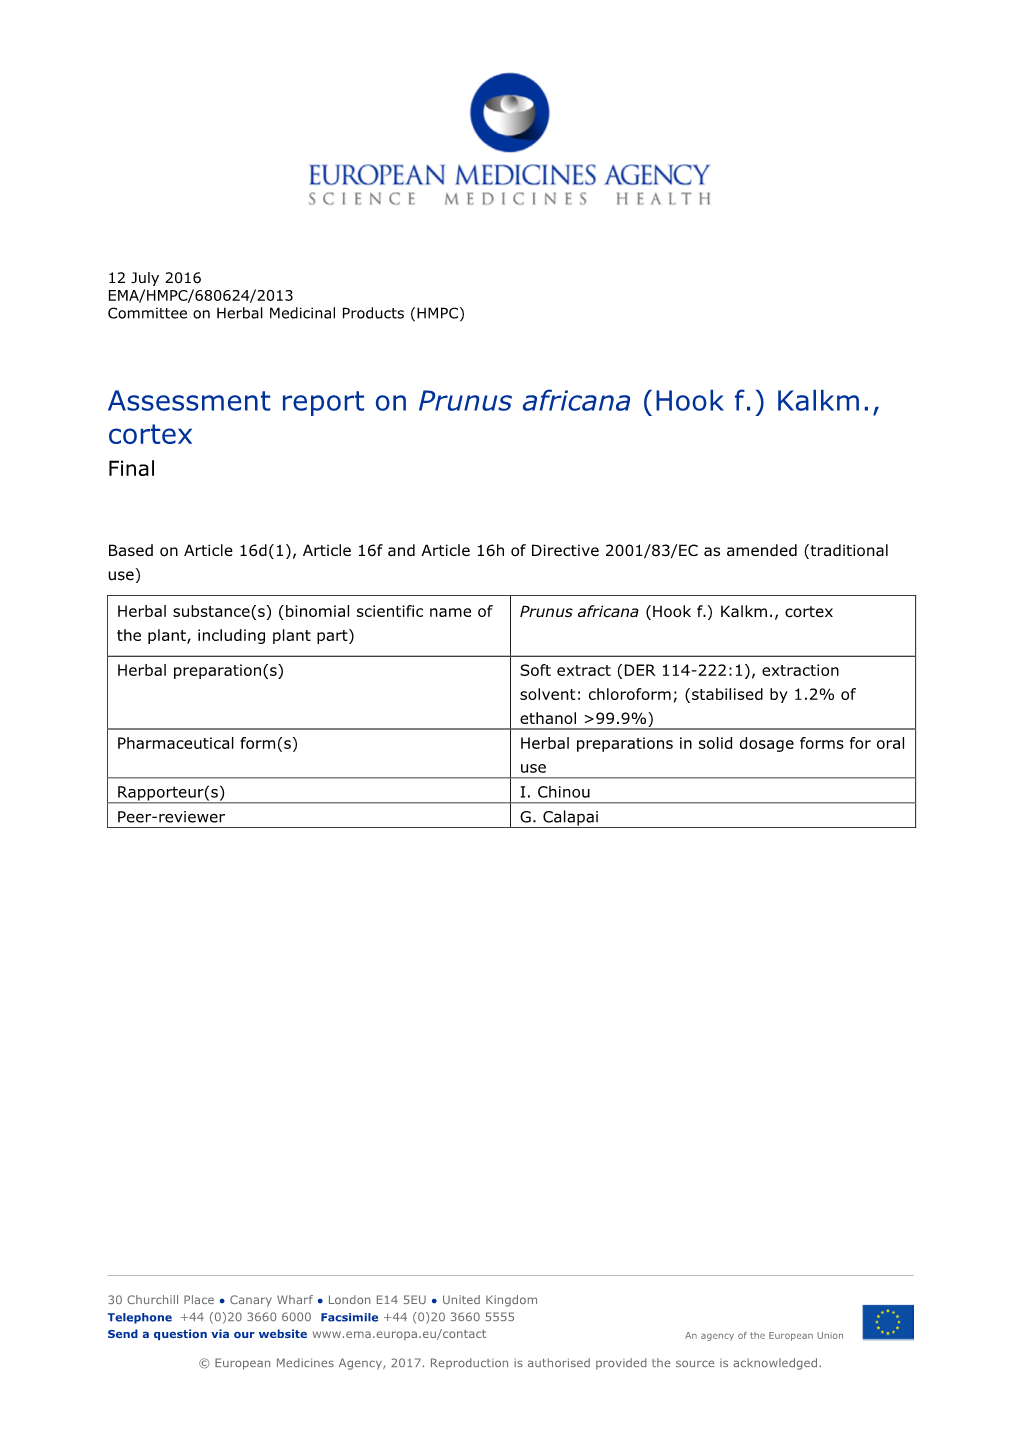 Assessment Report on Prunus Africana (Hook F.) Kalkm., Cortex Final